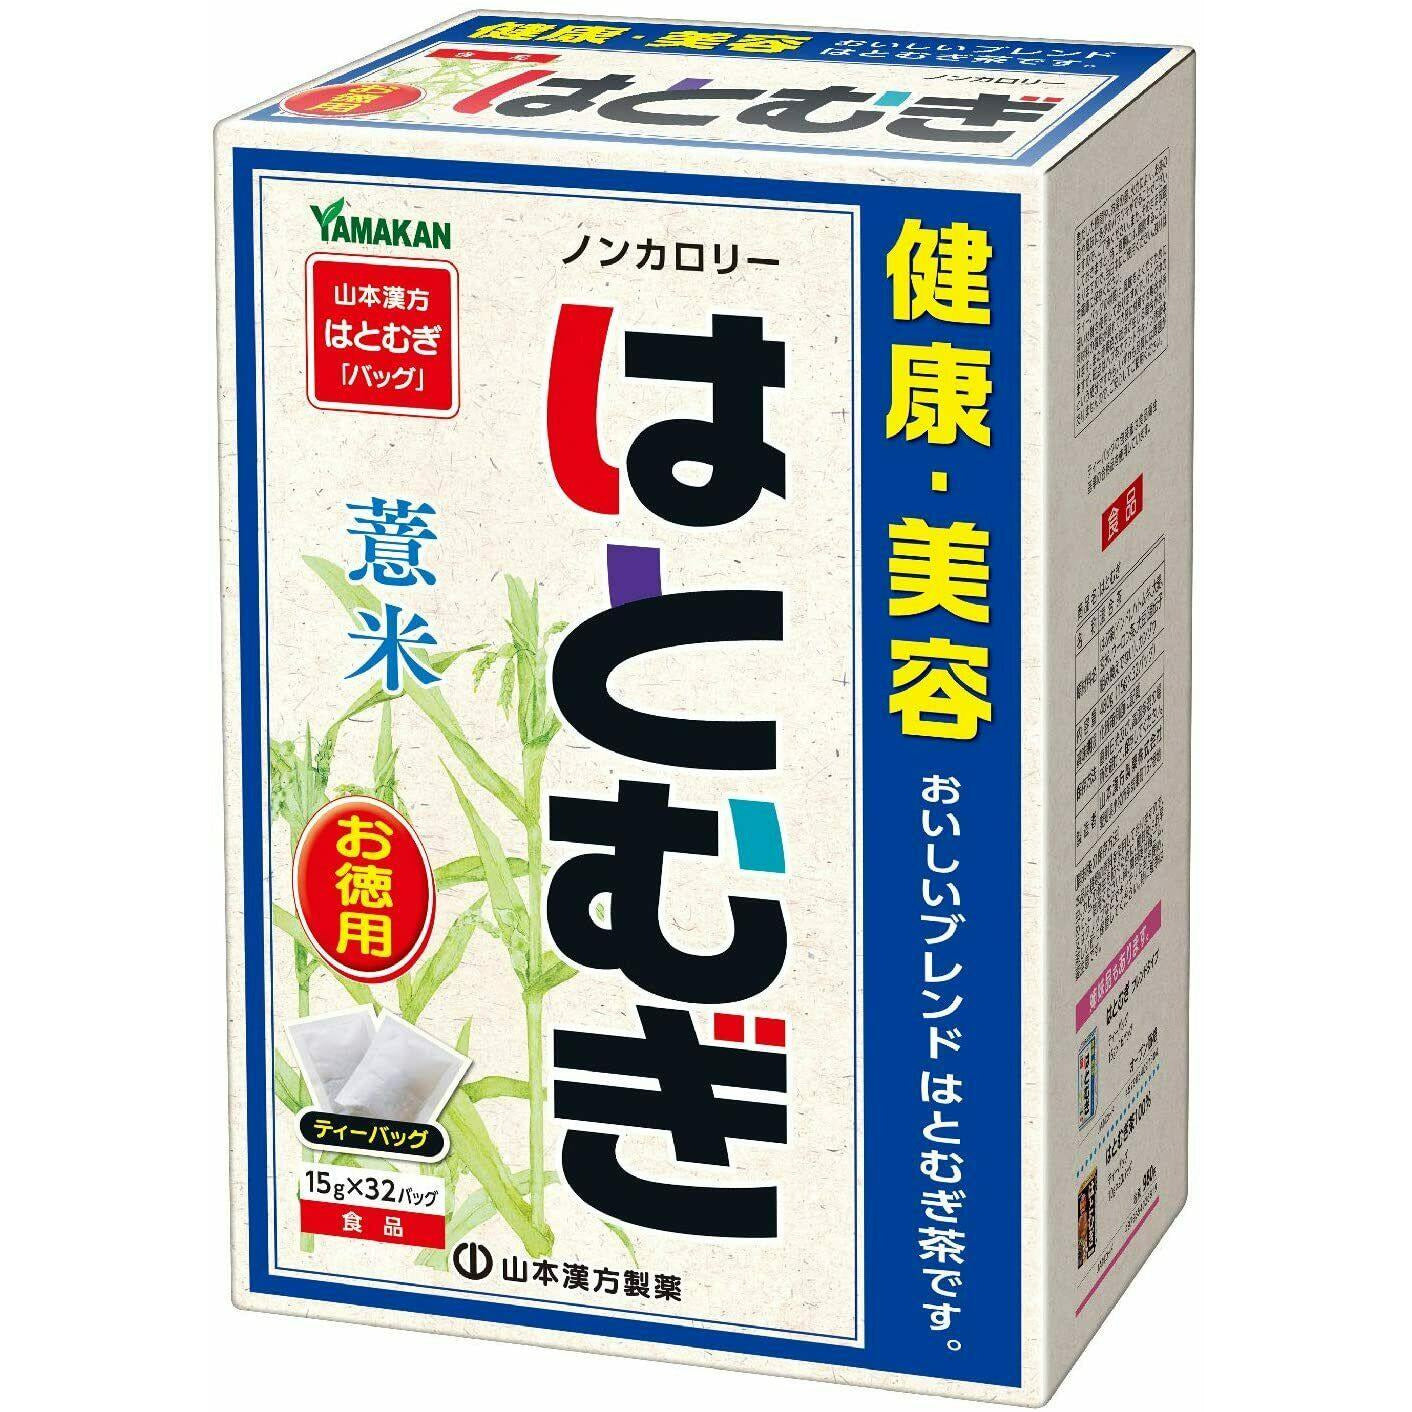  Yamamoto Kanpo Value Job's tears tea 15gx32 packets Zero calories